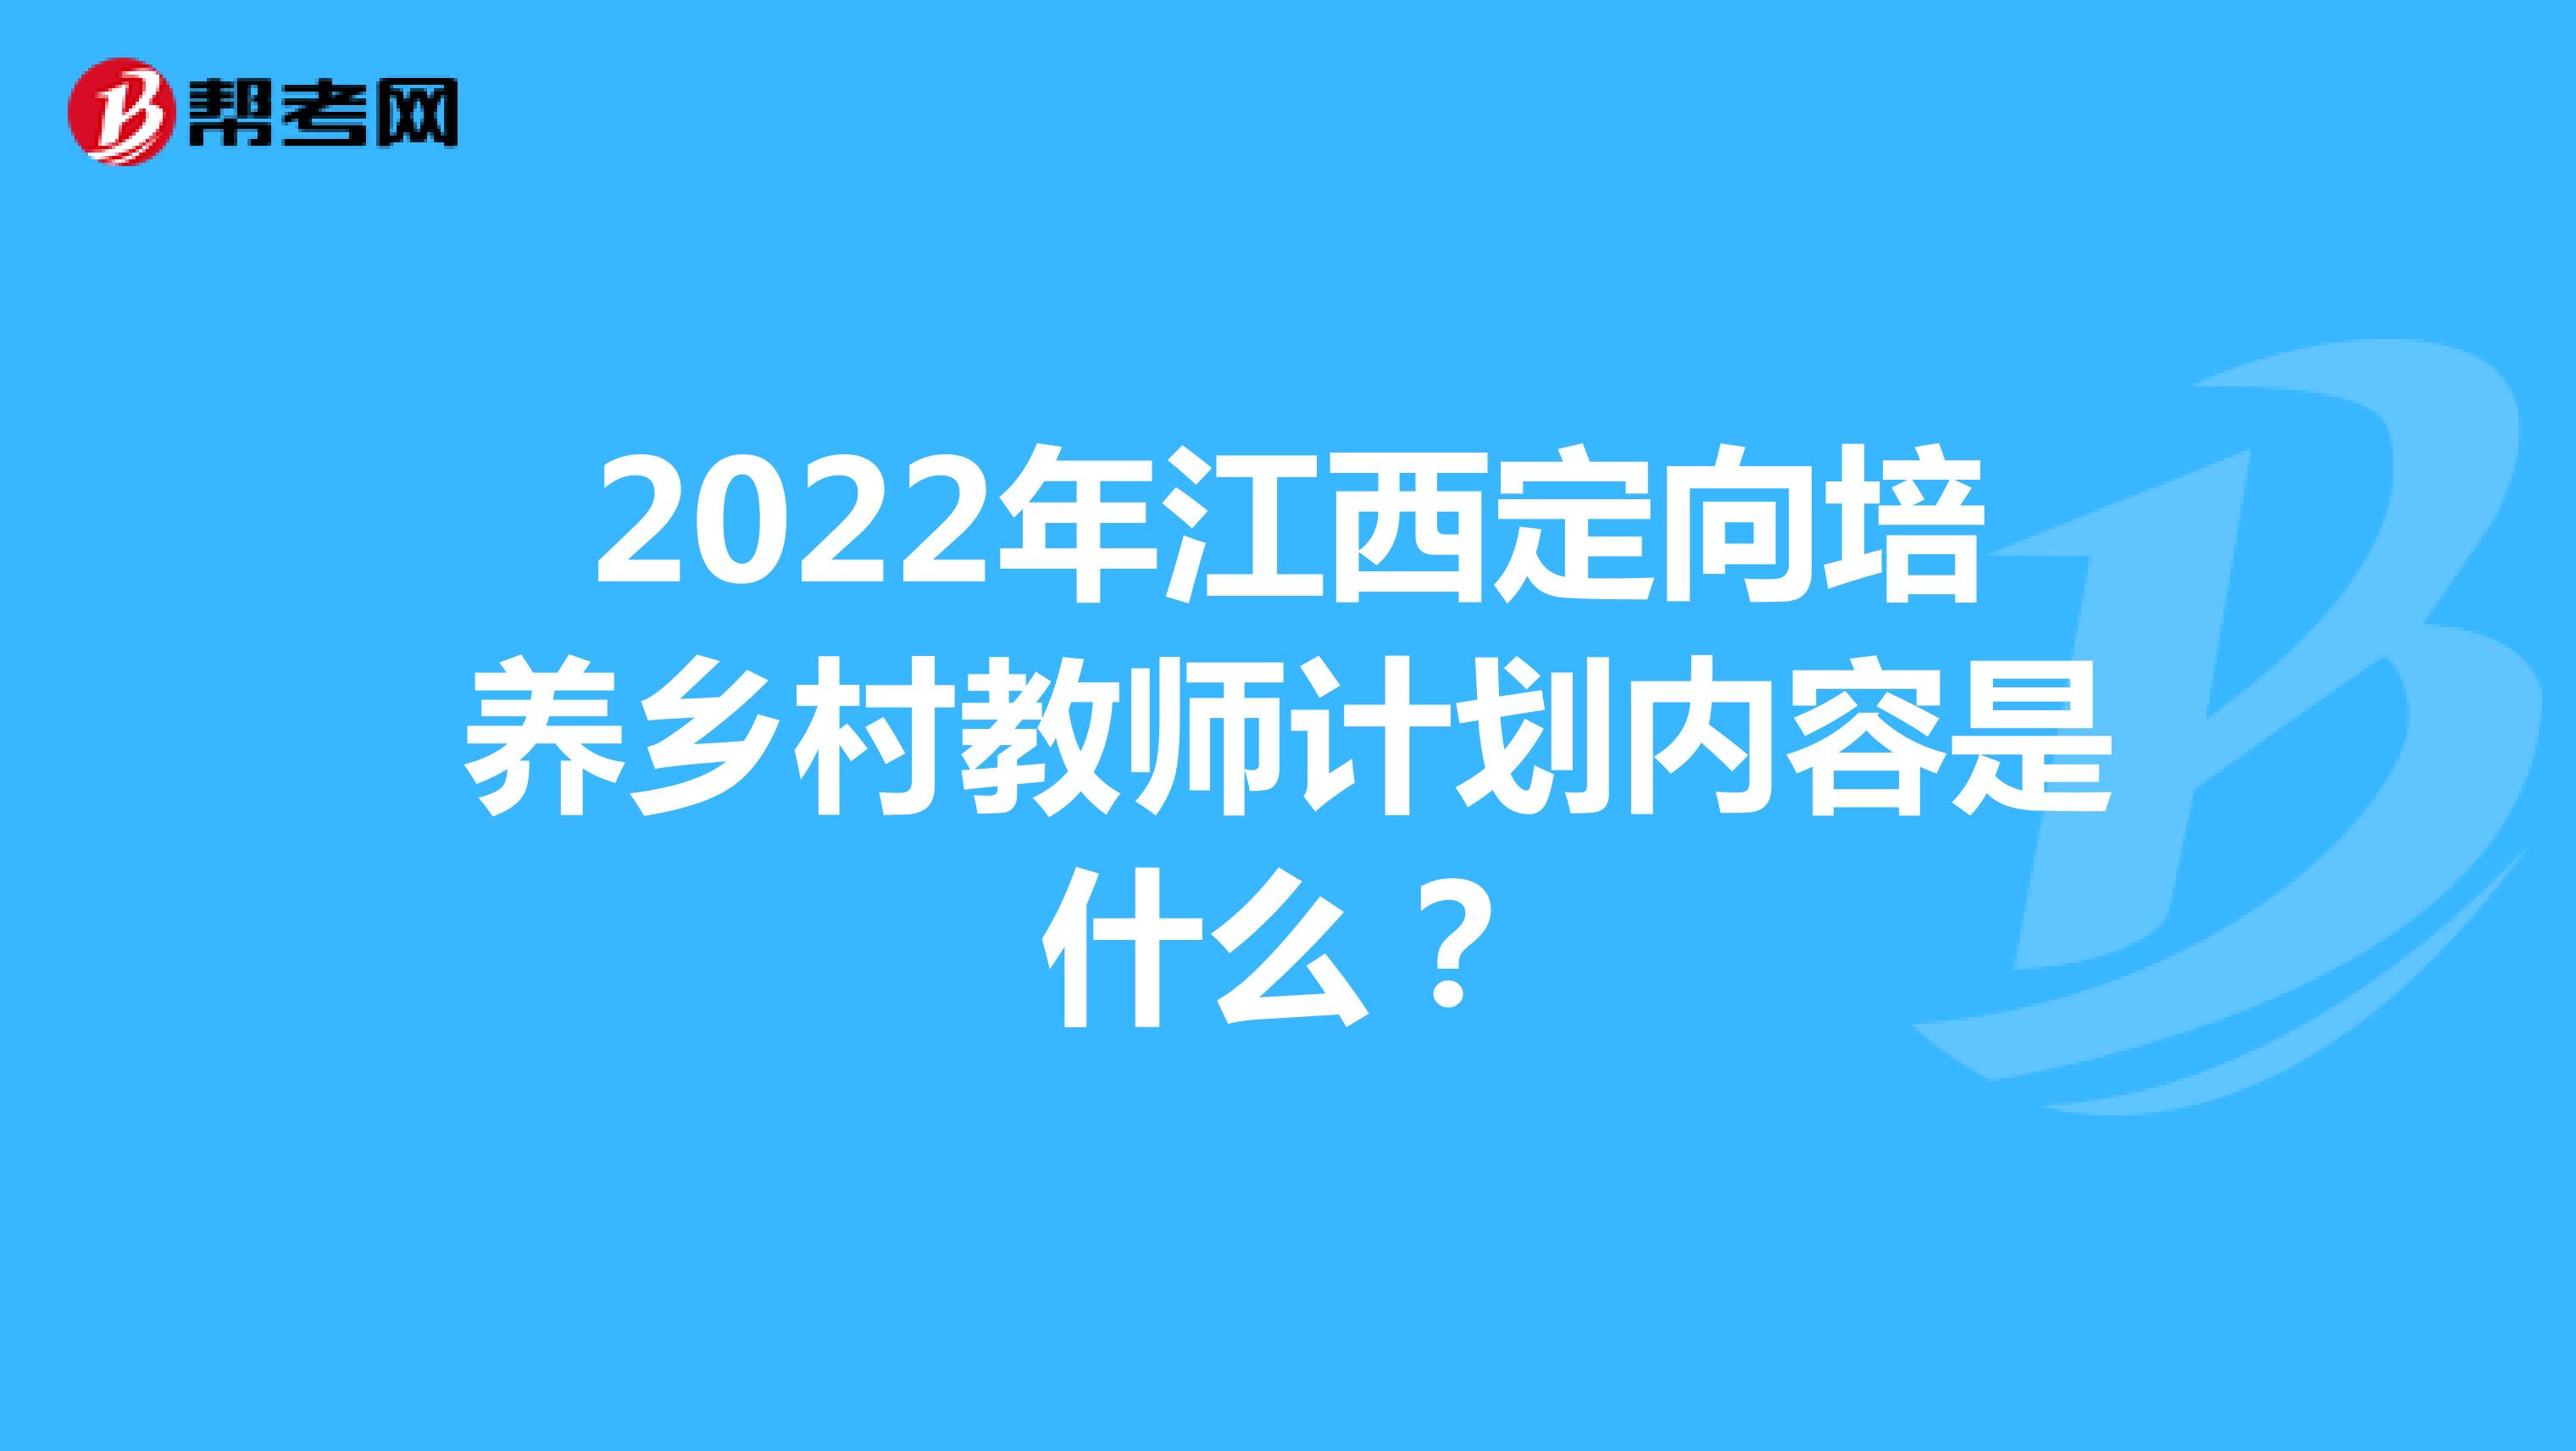 2022年江西定向培养乡村教师计划内容是什么？